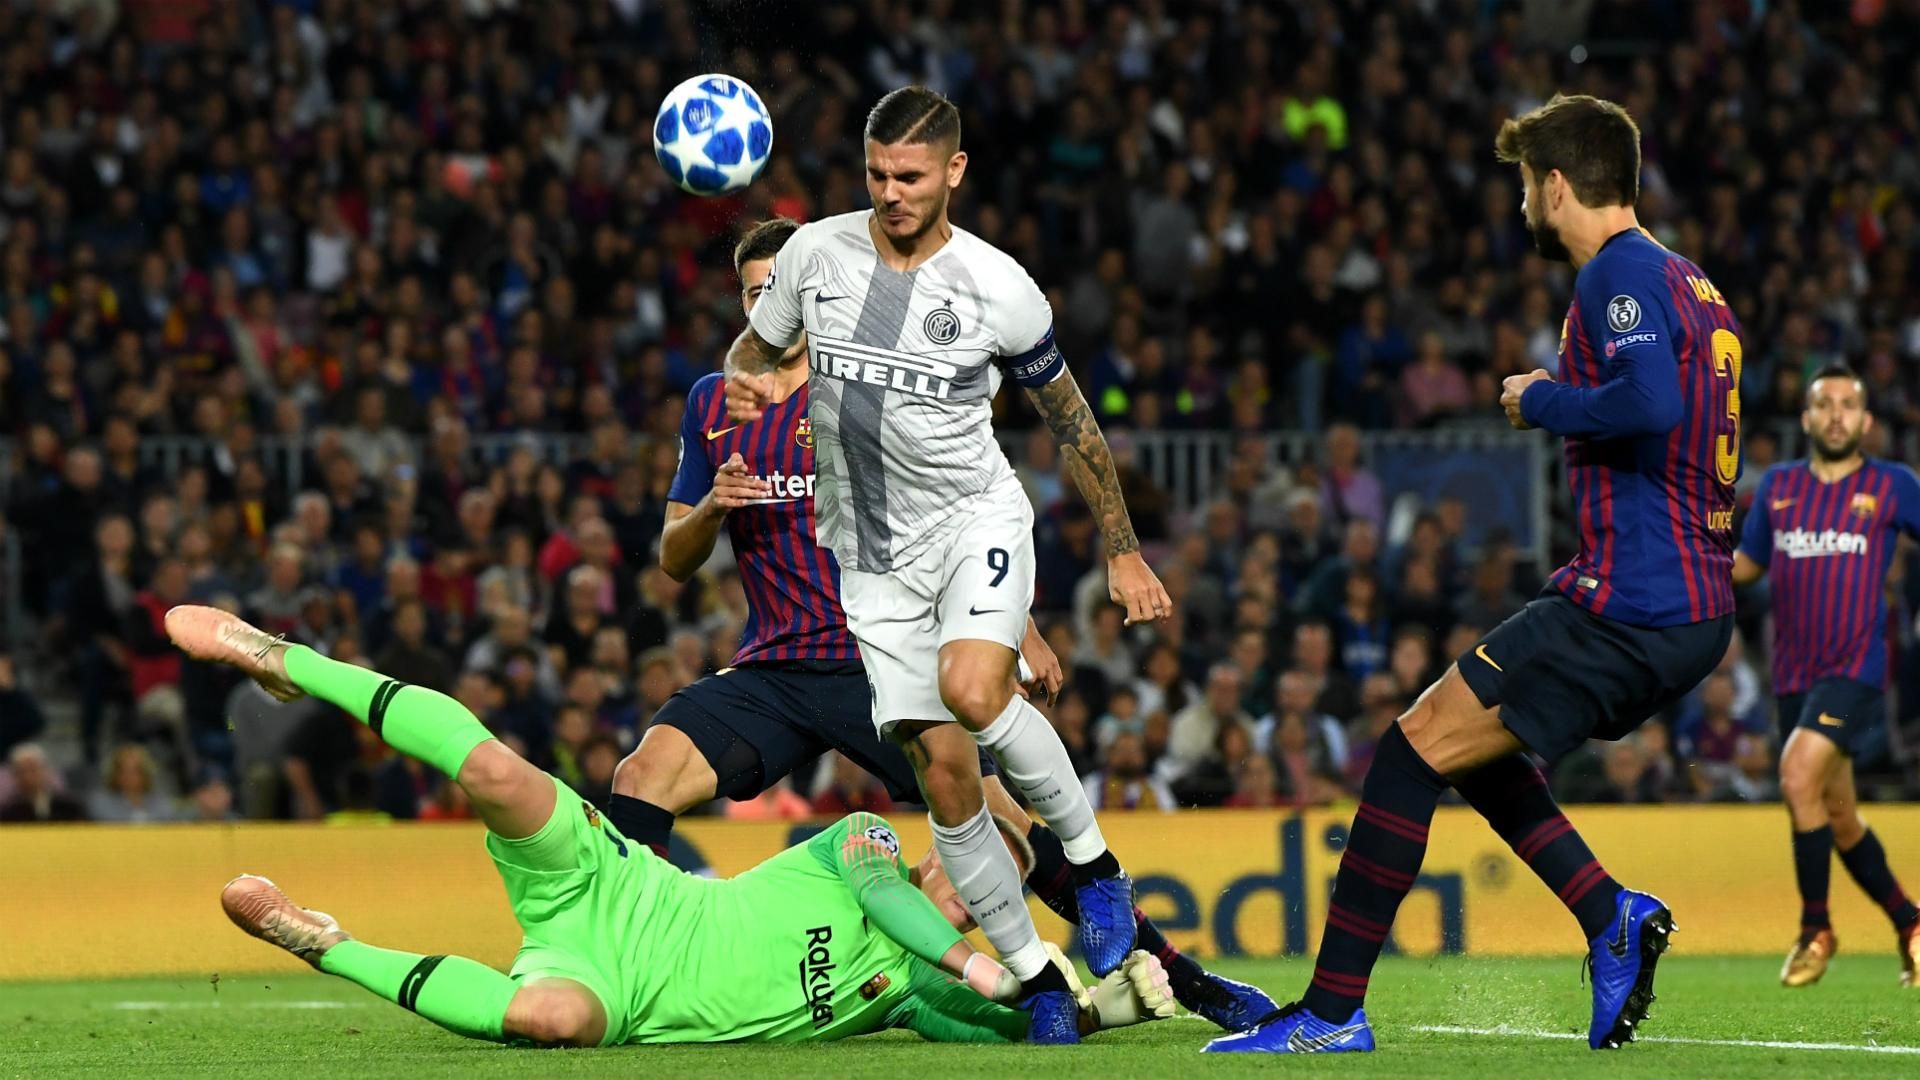 Барселона – Интер: где смотреть онлайн матч 2 октября 2019 – Лига чемпионов